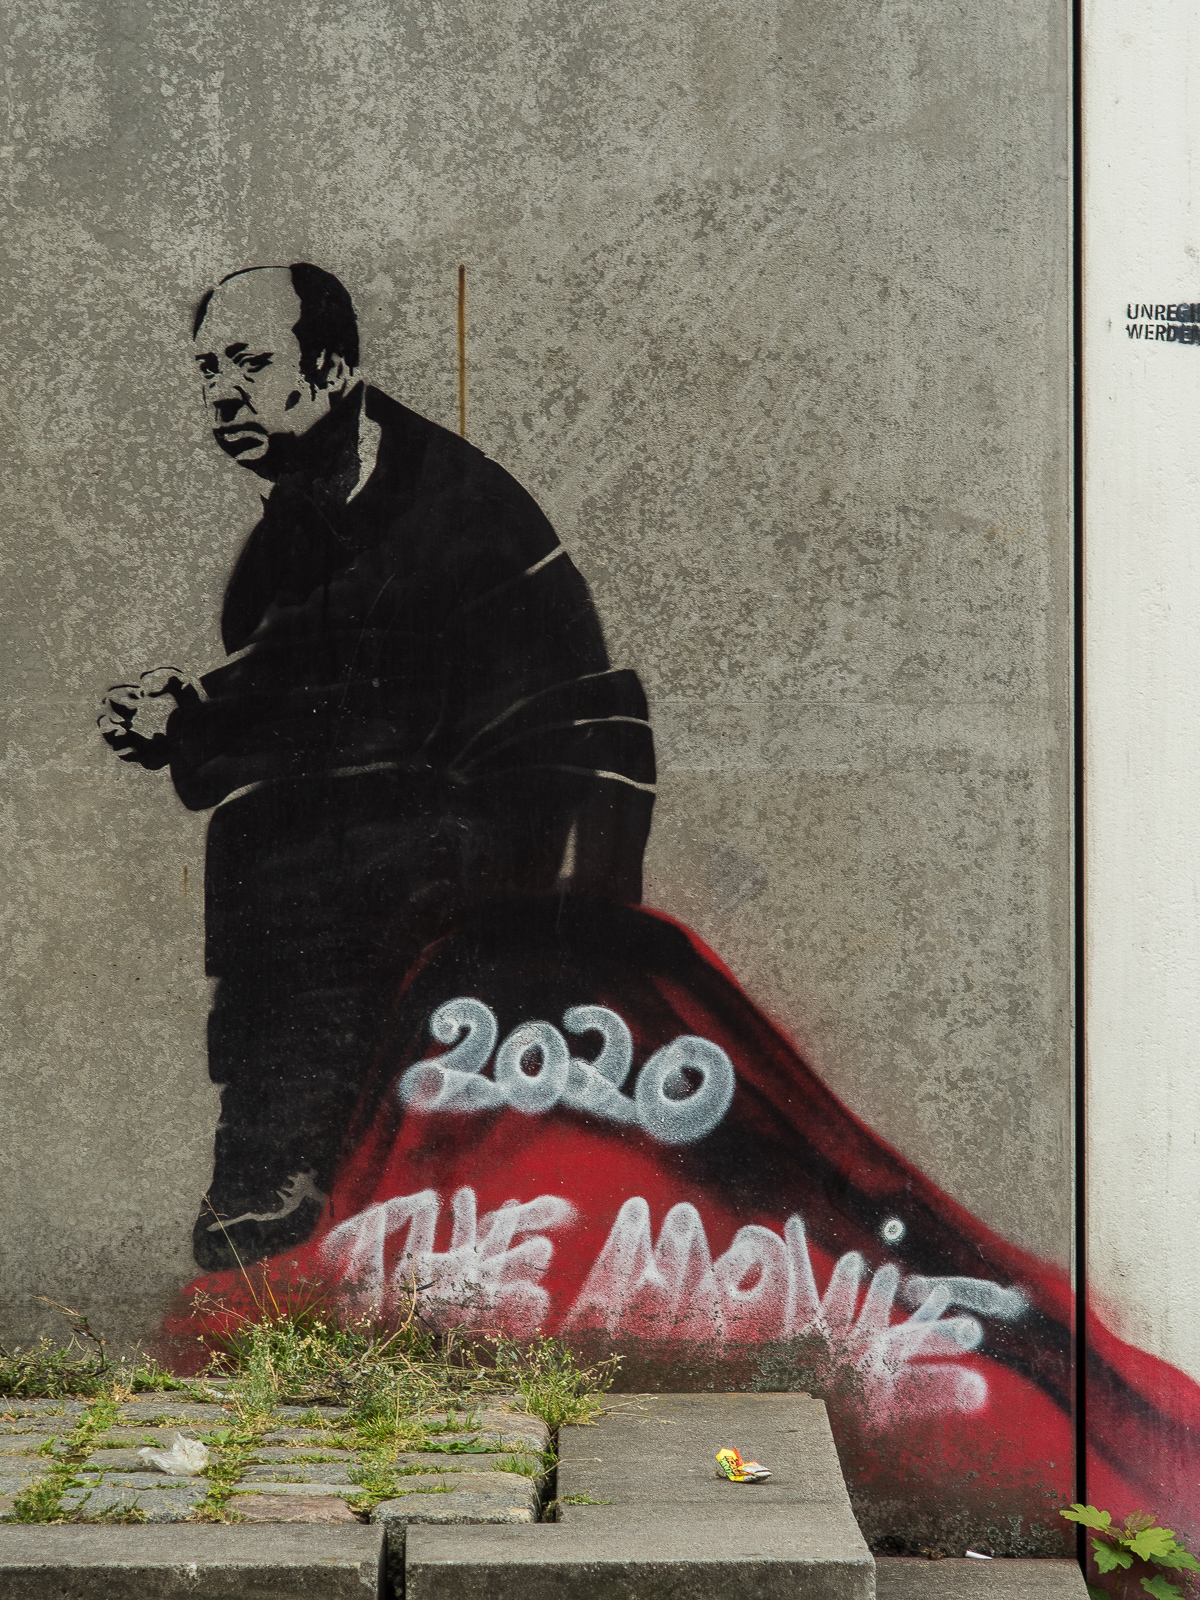 Eine graue Betonmauer. Eine gesprayte Figur eines schwarz gekleideten, traurig wirkenden Mannes , undefinierter roter Untergrund. Weiße Krakelschrift: "2020 The Movie"